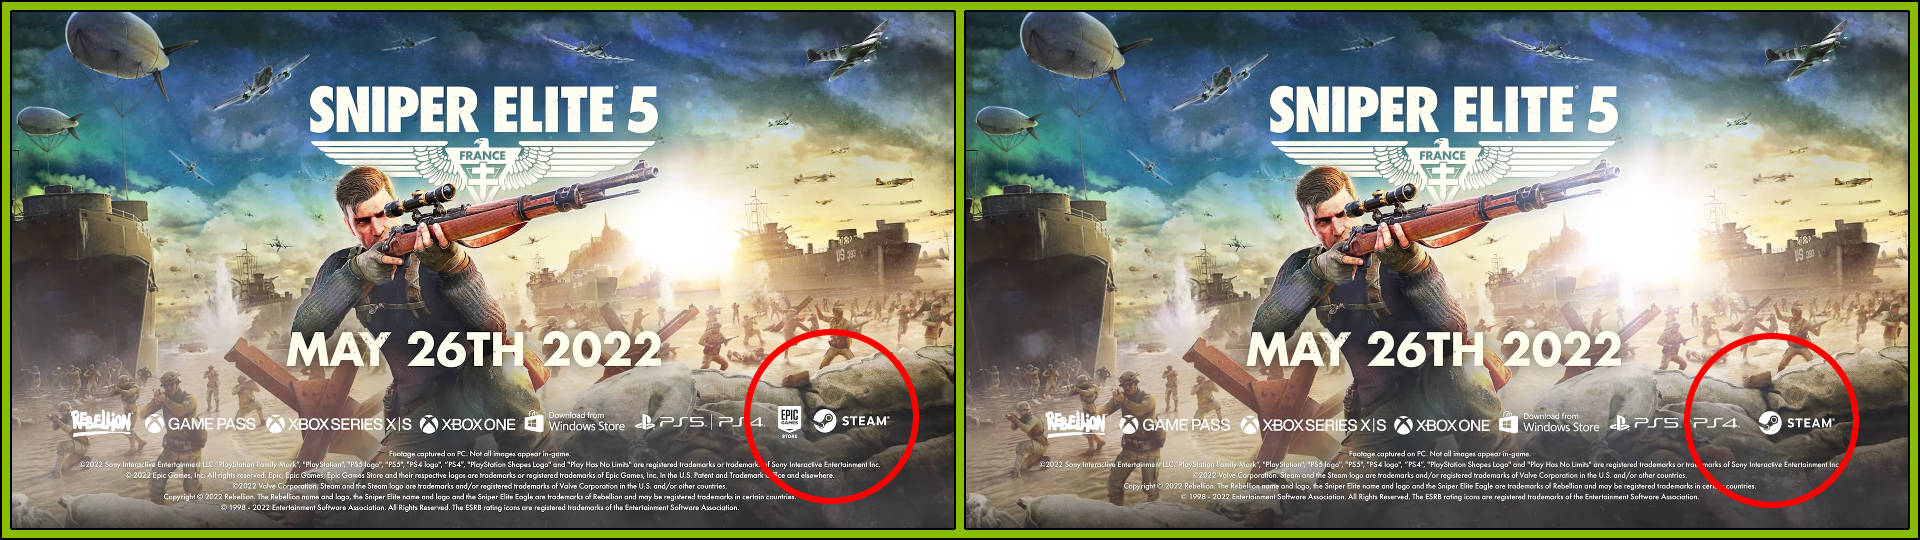 Sniper Elite 5 Epic Games Store Menunda Perbandingan Kartu Akhir YouTube